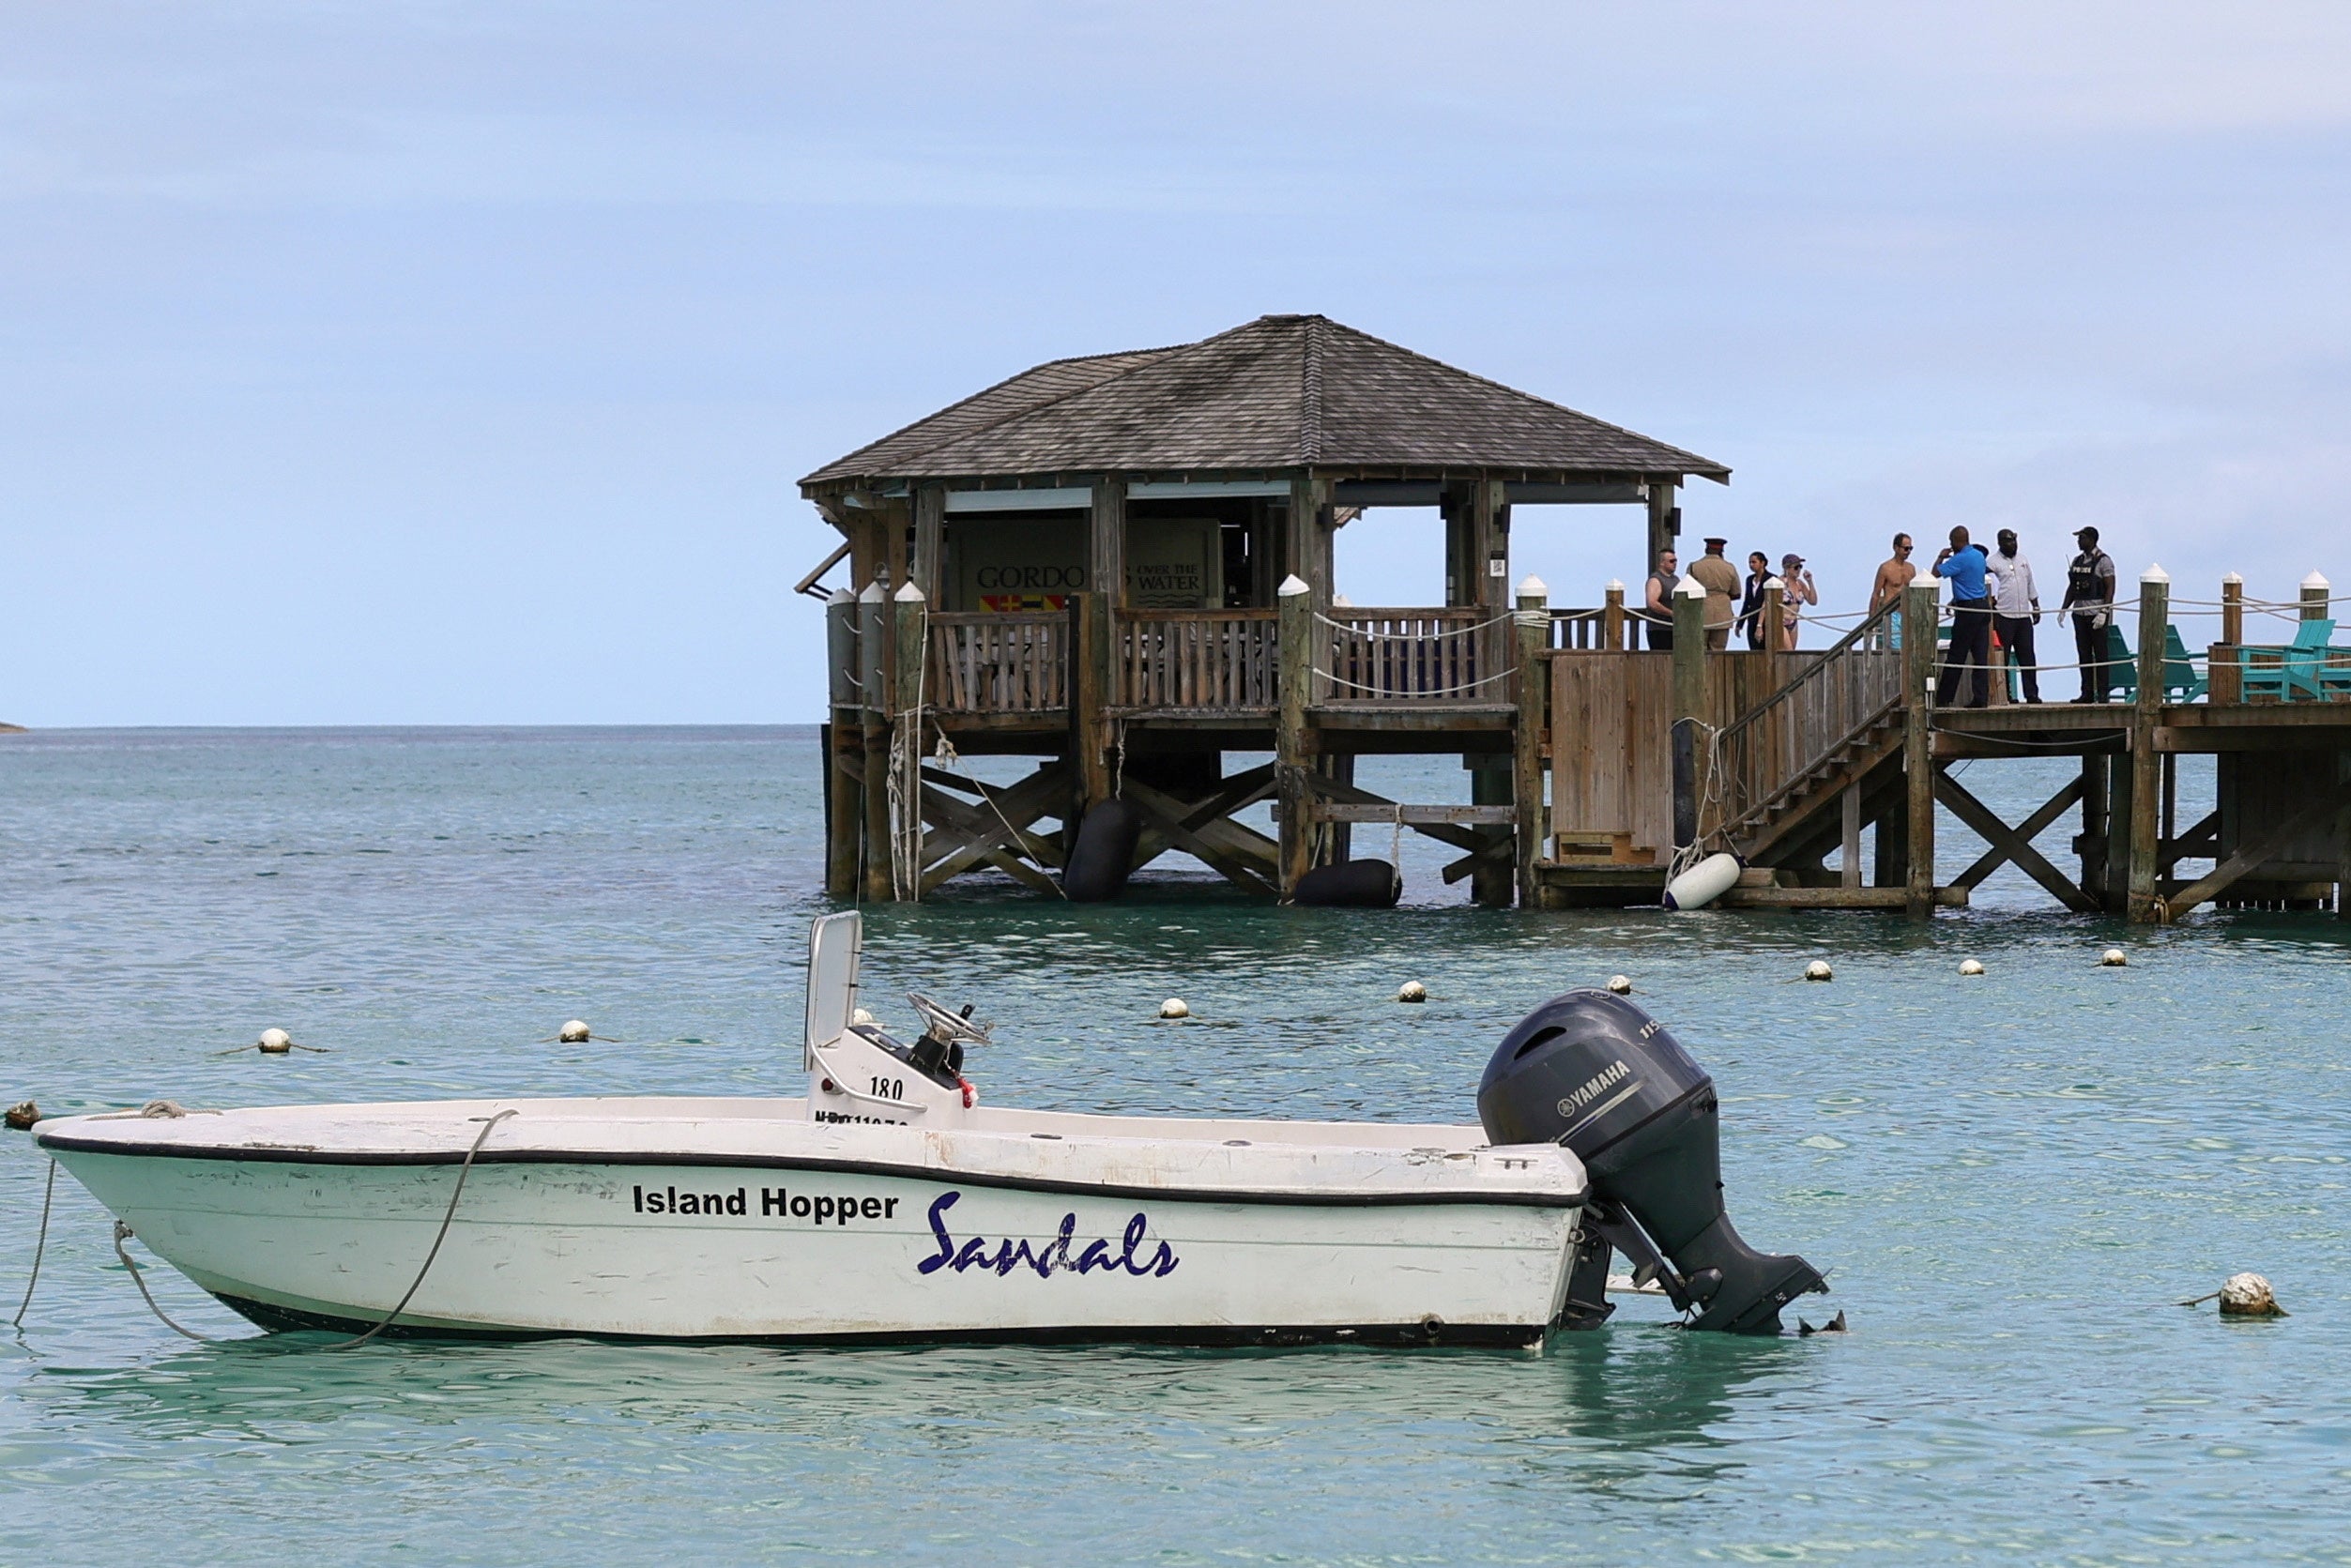 Un grupo de personas se reúne en el muelle del complejo turístico Sandals Royal Bahamian tras el ataque del tiburón.